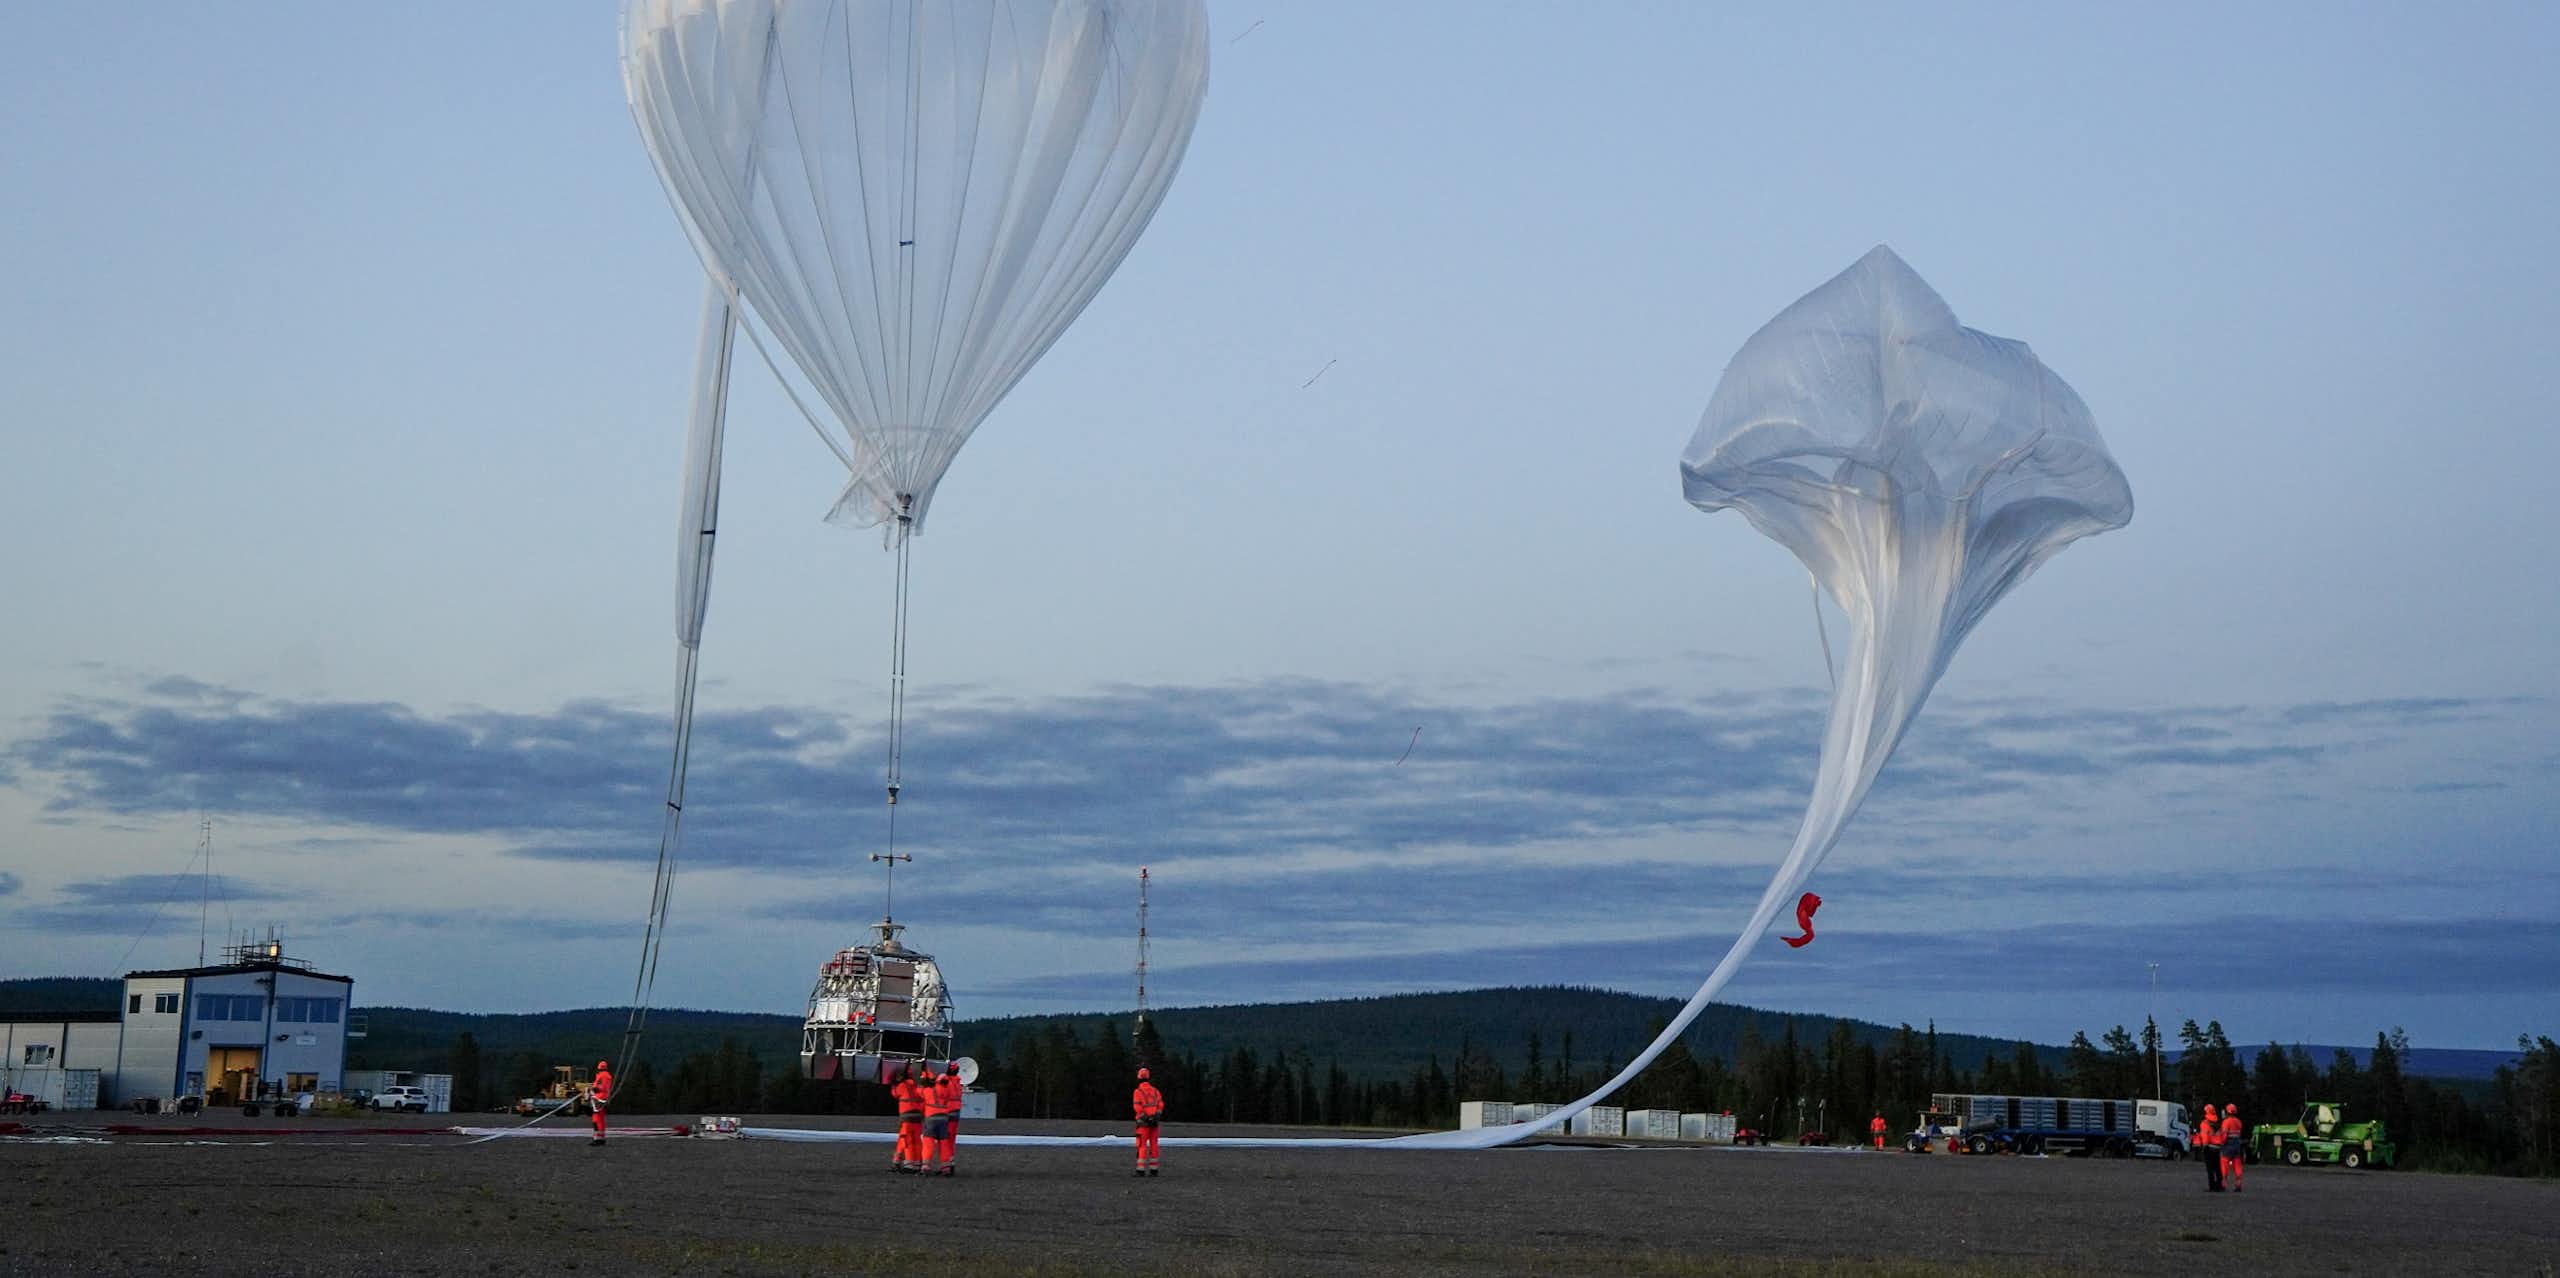 Lâcher d'un ballon stratosphérique pour la campagne Klimat 2021.